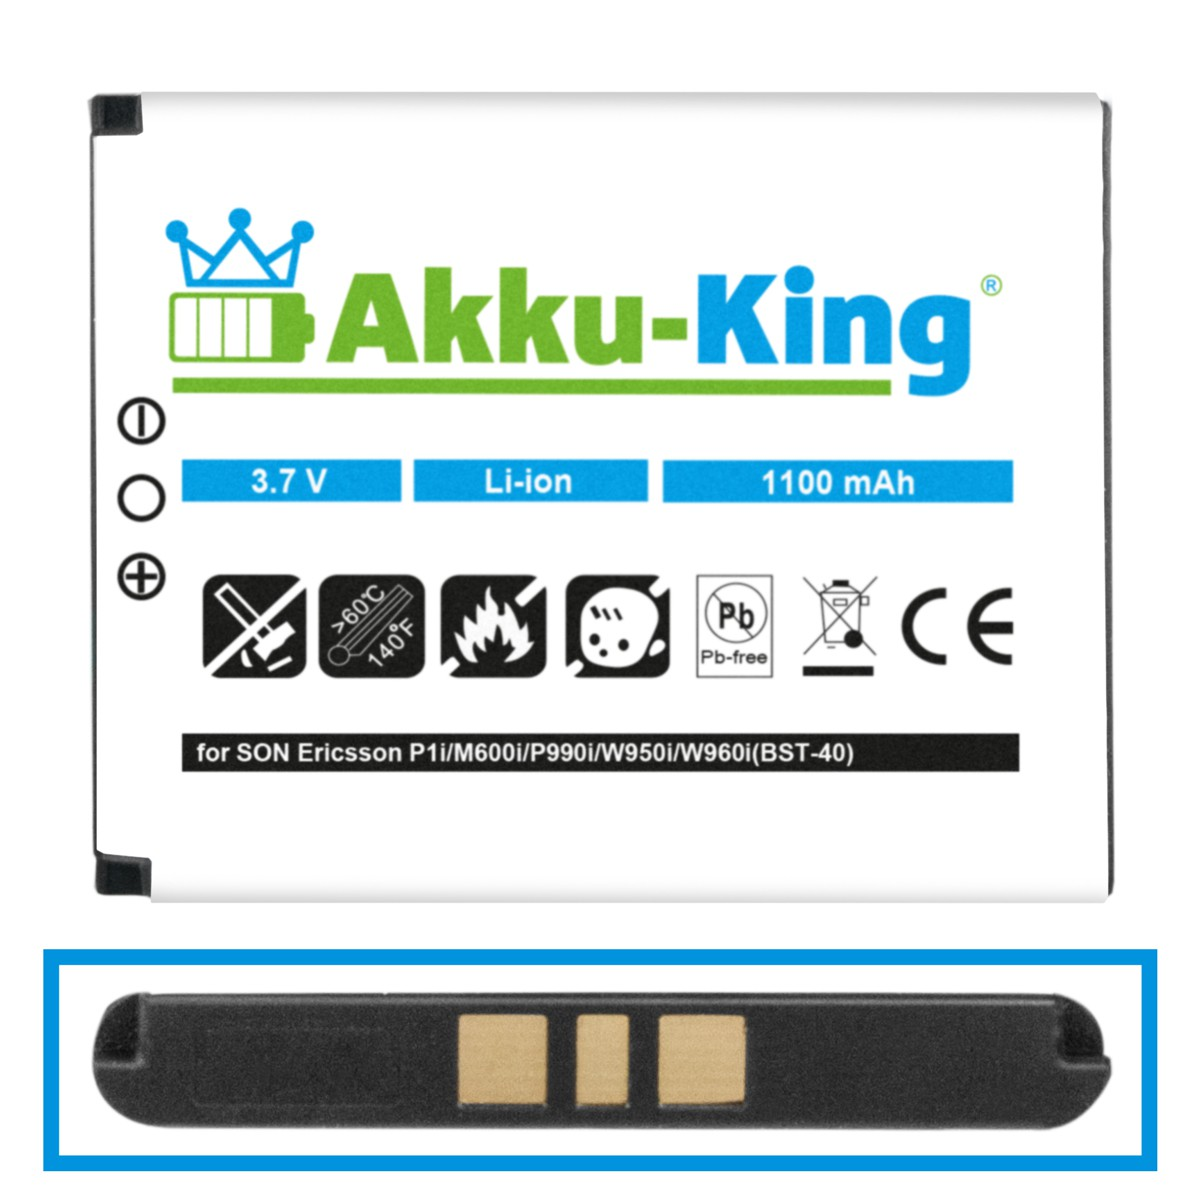 Volt, mit Handy-Akku, Sony-Ericsson 1100mAh AKKU-KING BST-40 3.7 Li-Ion Akku kompatibel